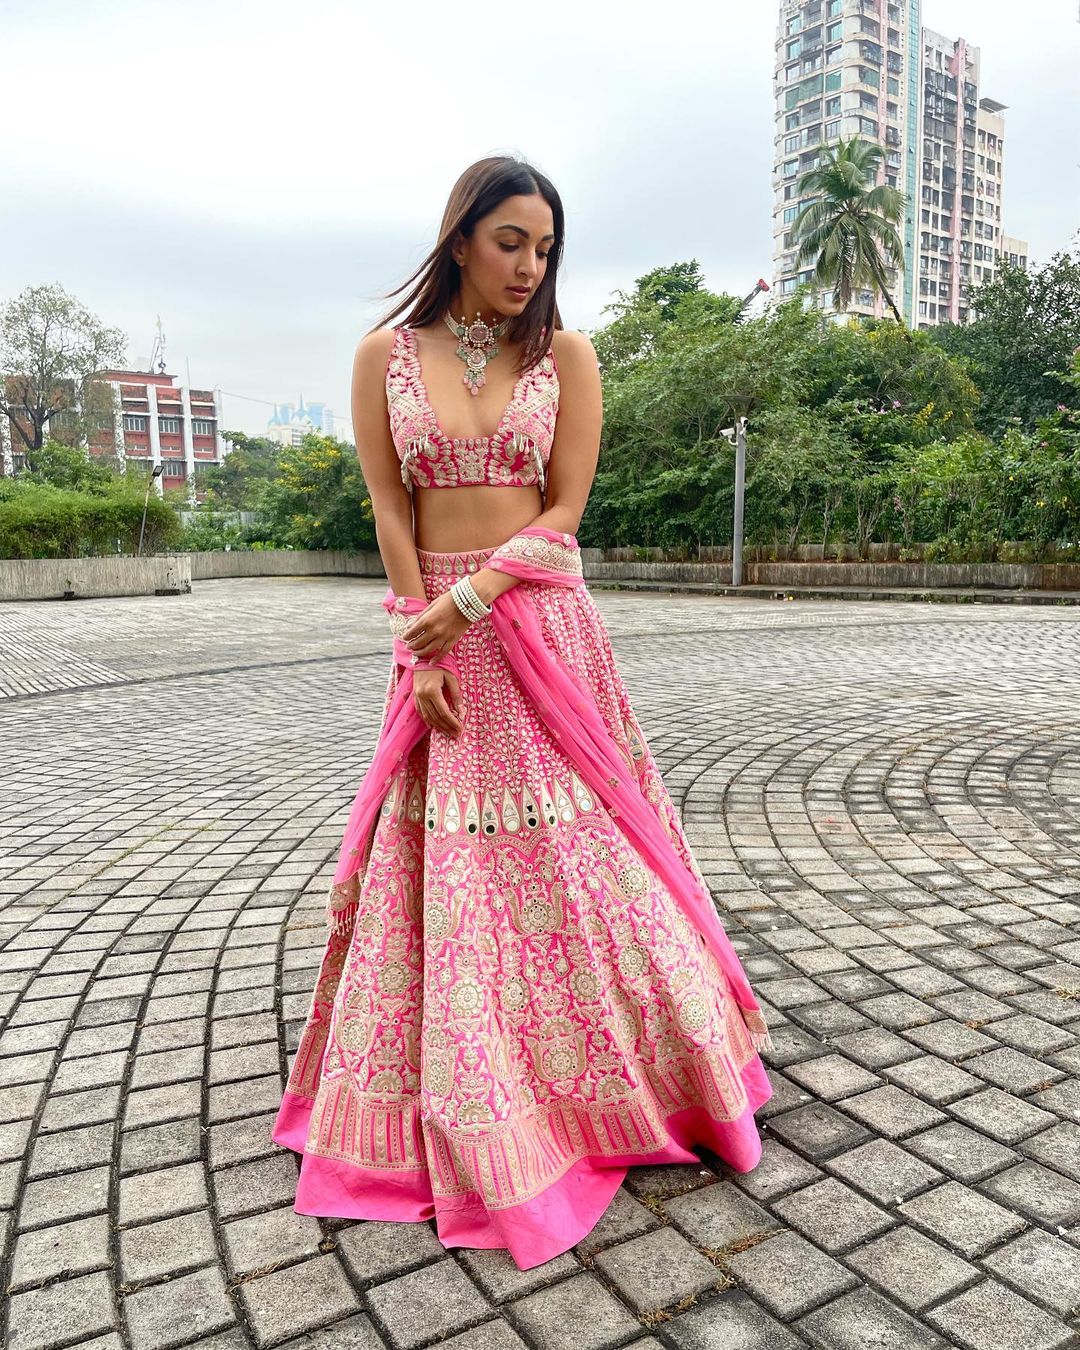 kiara advani looking stunning in pink lehenga know the price | कियारा आडवाणी ने डीपनेक ड्रेस में दिखाईं अदाएं, लहंगे की कीमत उड़ा देगी होश | Hindi News,